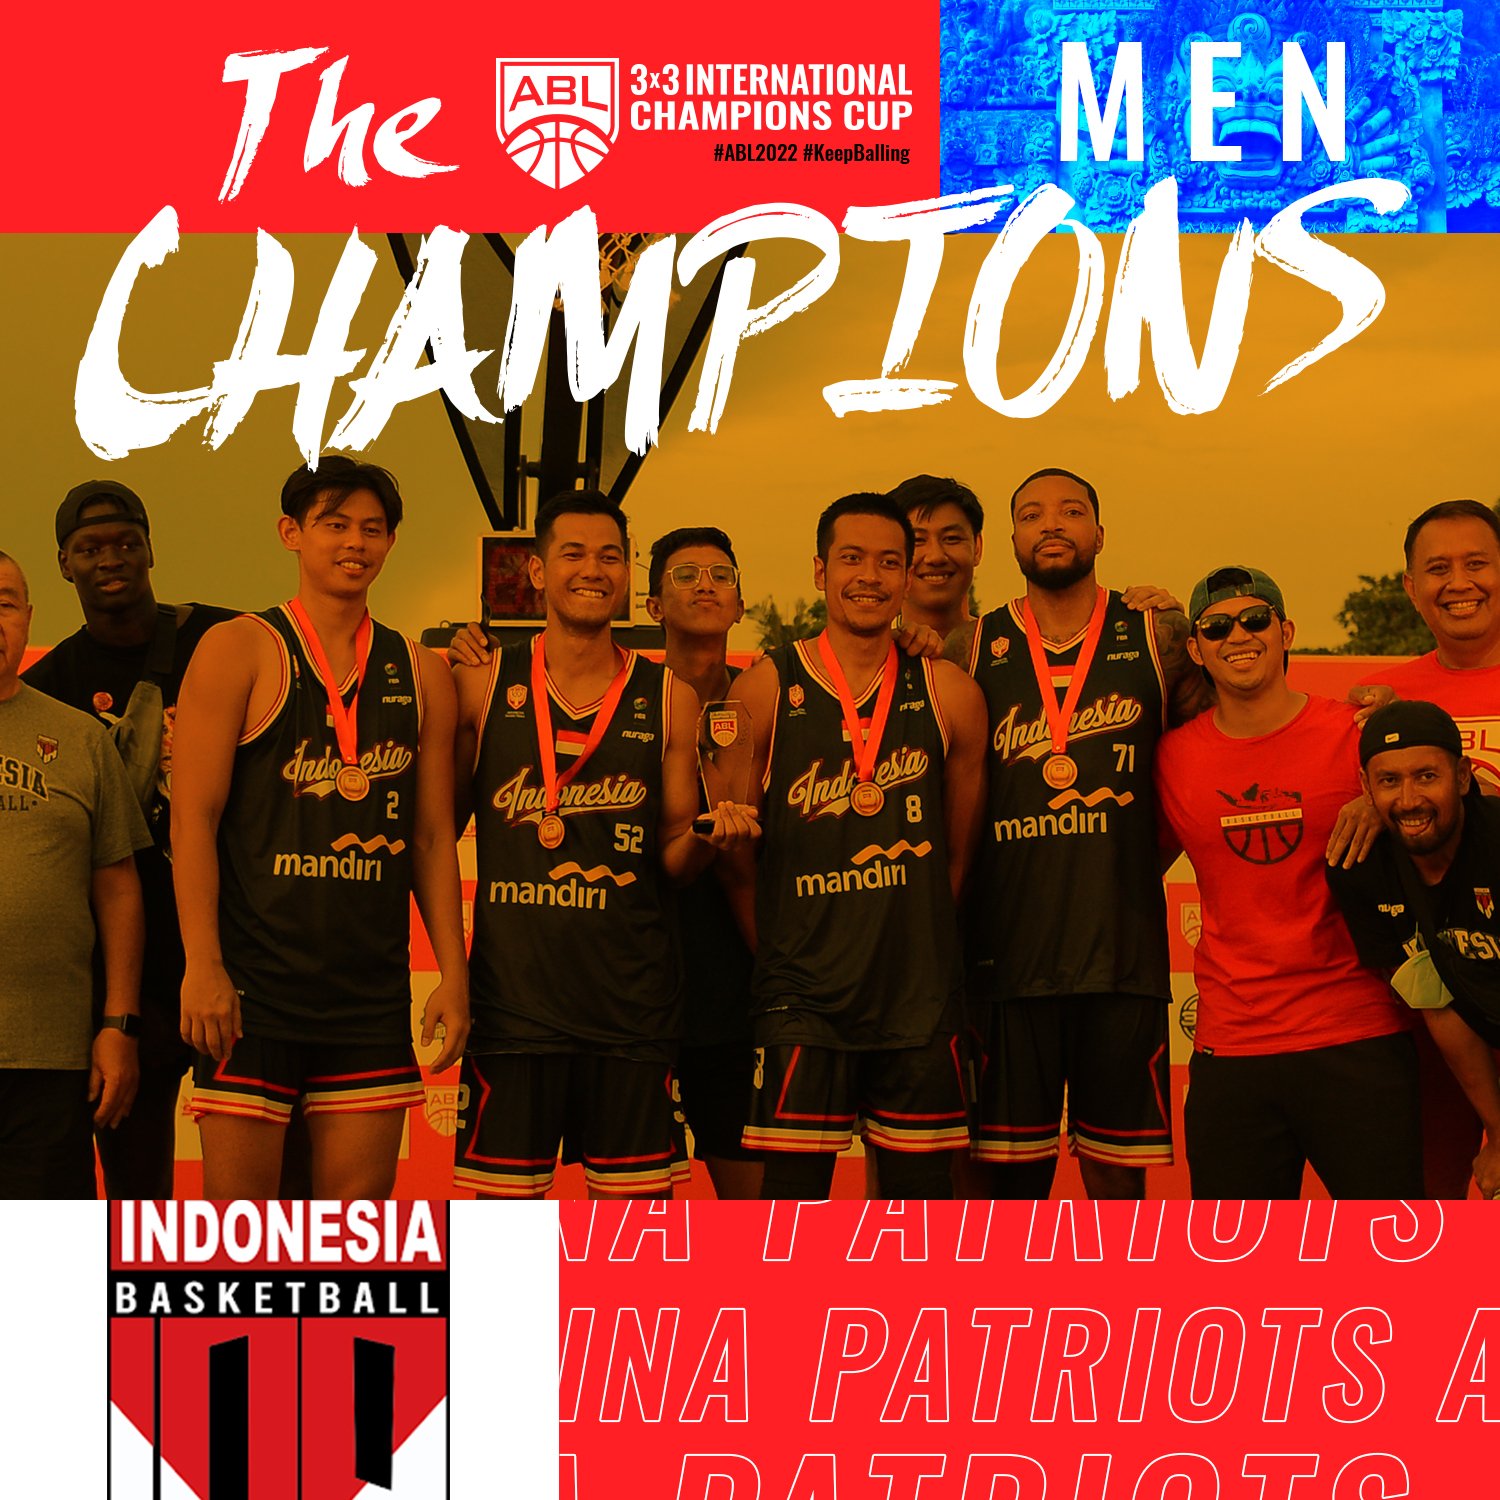 ABL3人篮球赛国际冠军杯  马男篮负印尼夺亚军